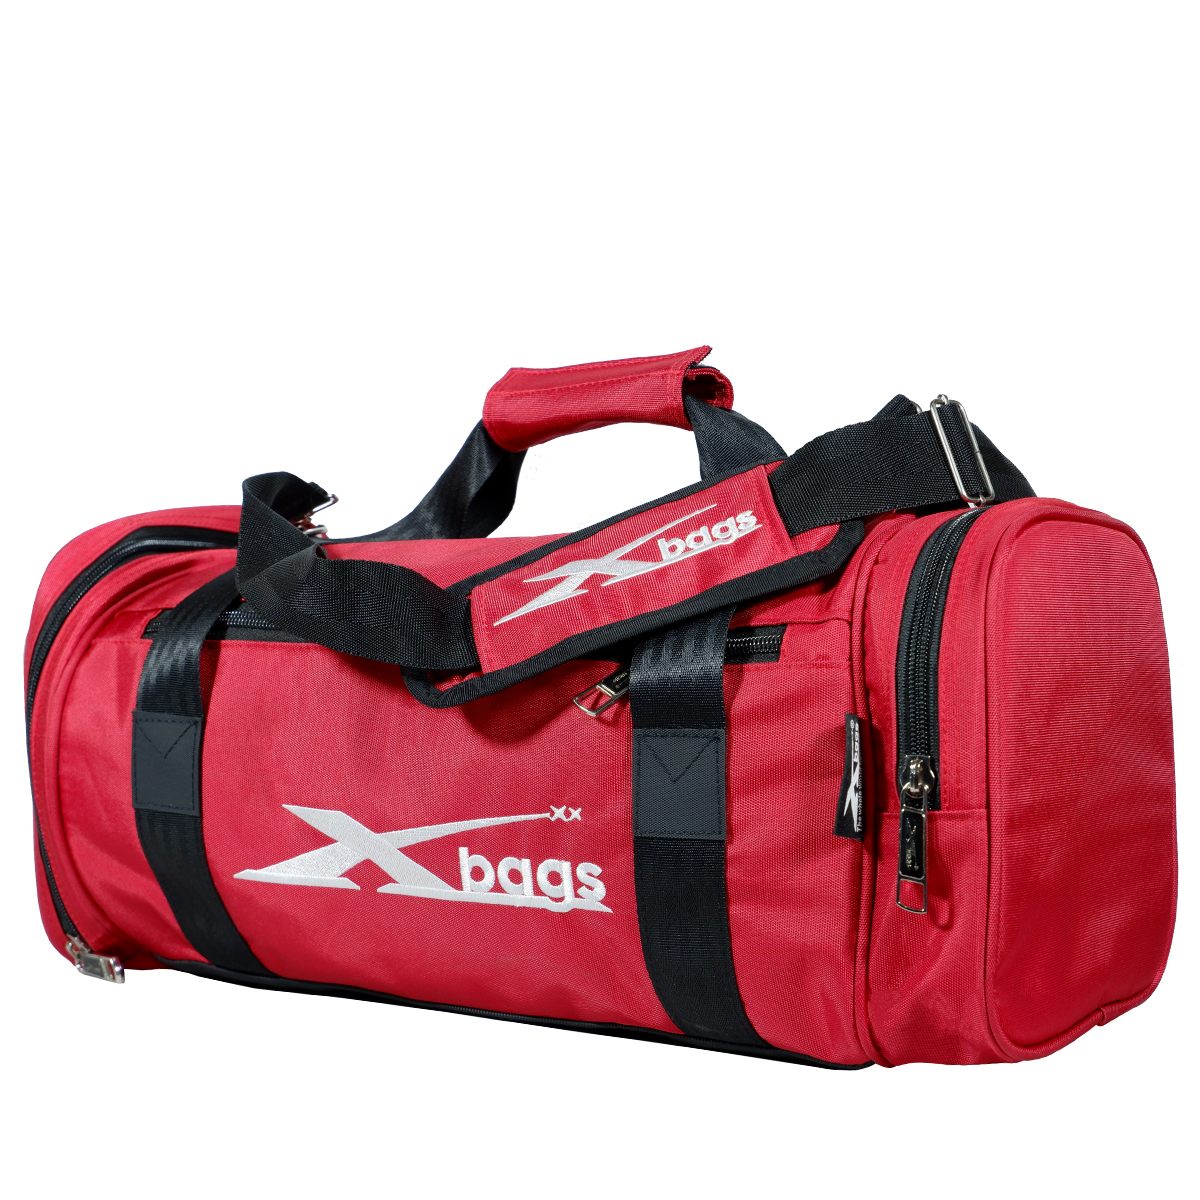 Túi trống thể thao XBAGS XB 6002 nhiều ngăn chống nước tốt túi tập gym (Có ngăn đựng giày)